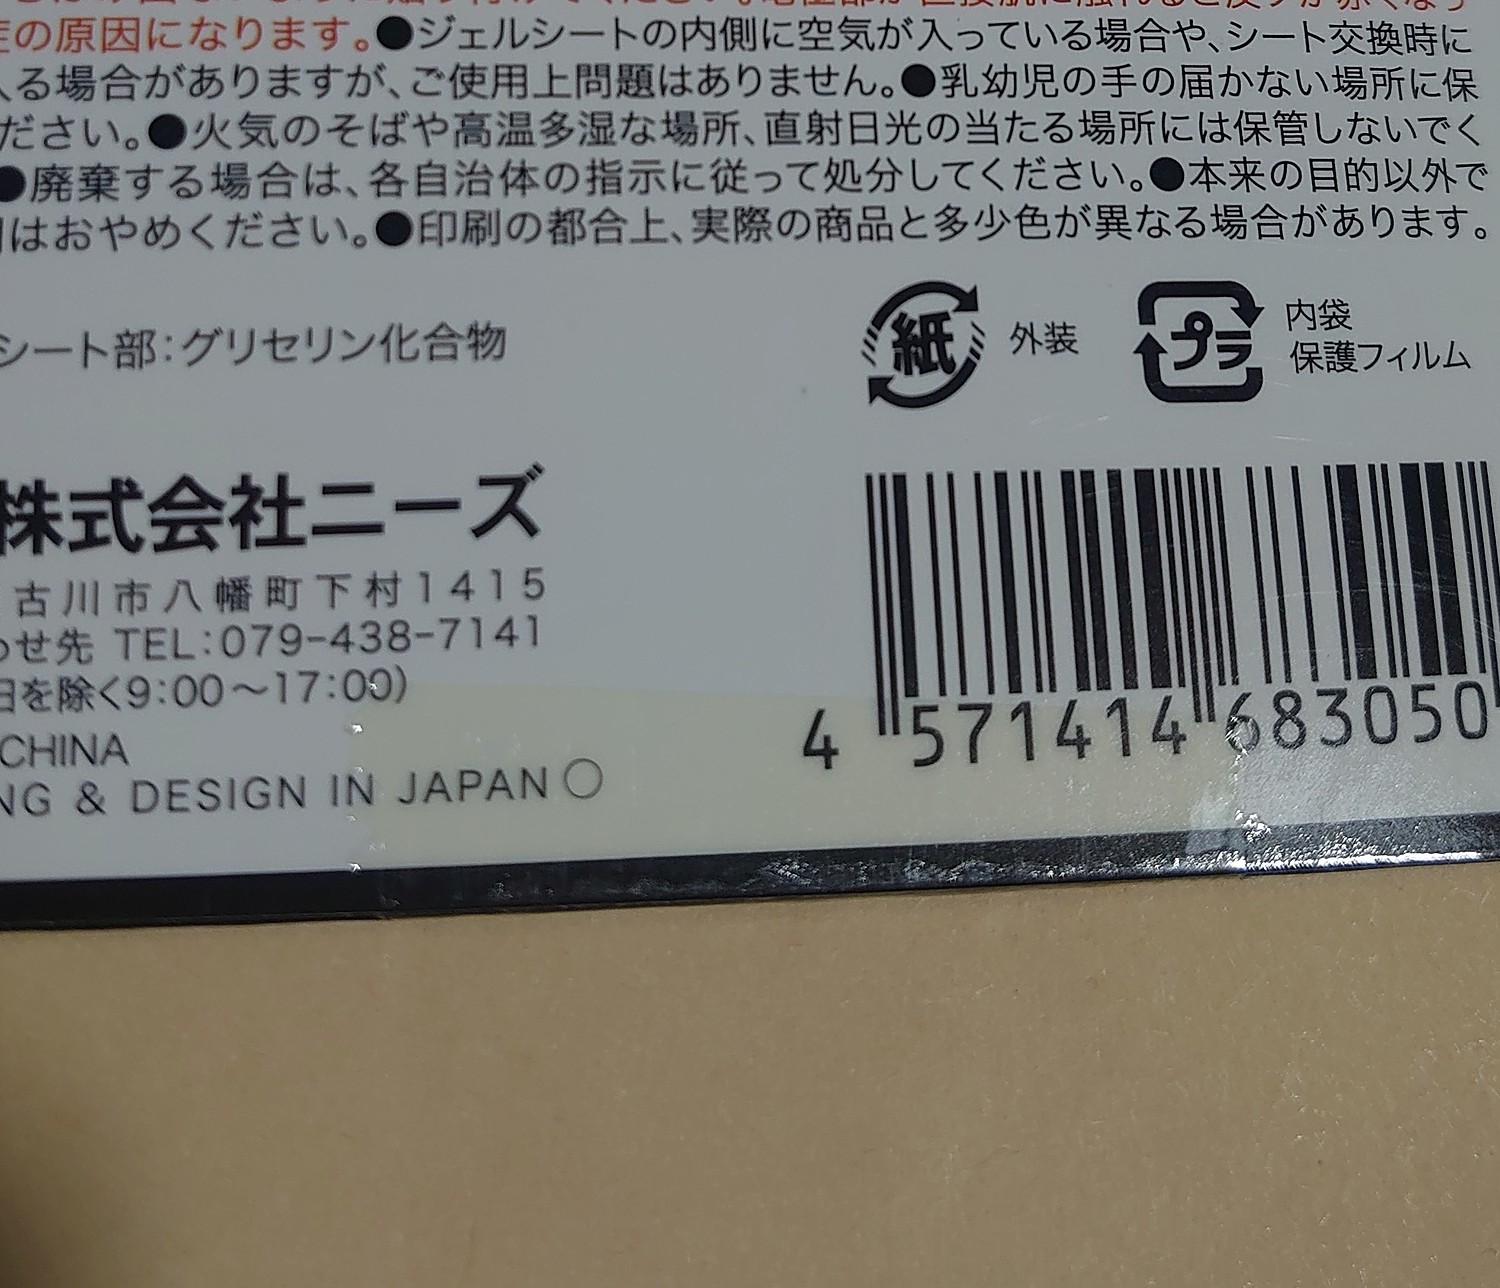 239円 定番キャンバス マッスルペンタゴン NEO 交換用ジェルシート